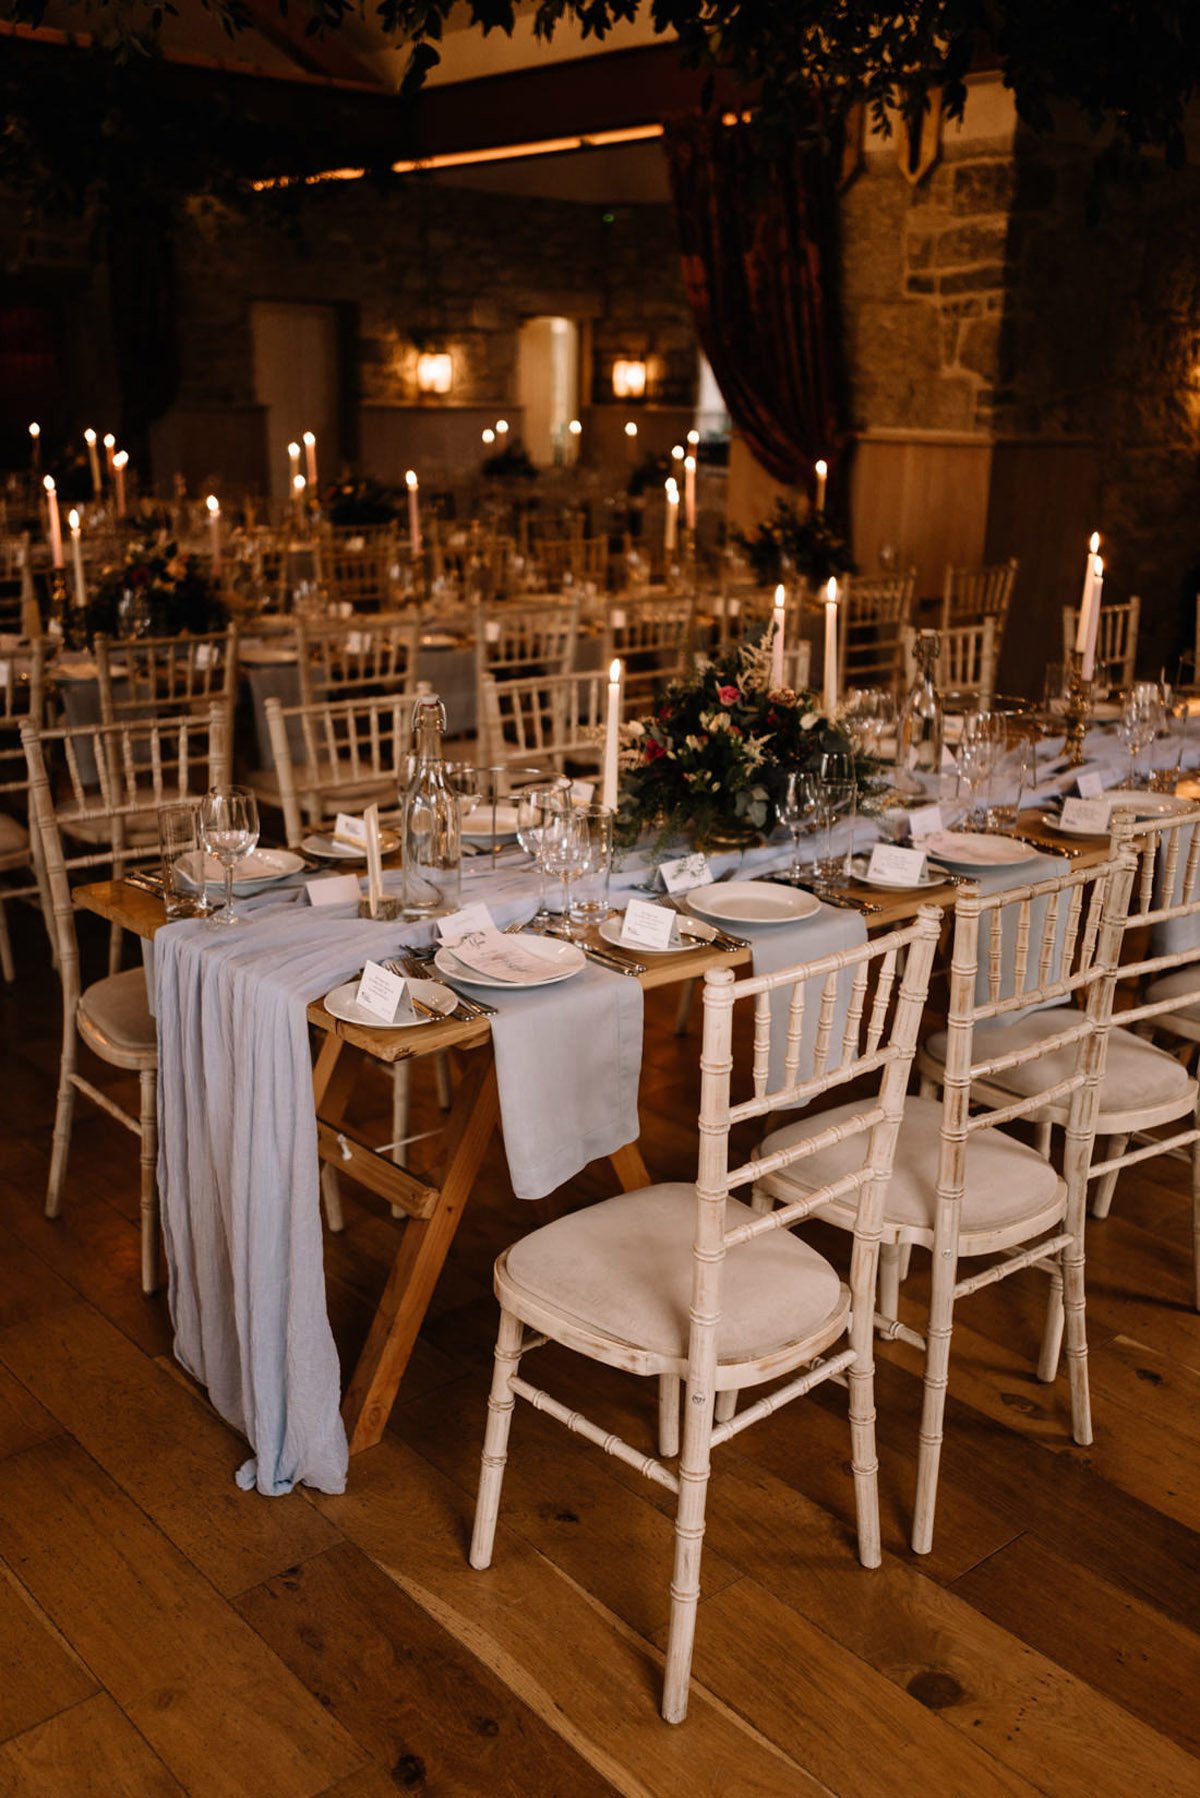 Trinity College Wedding - Reception